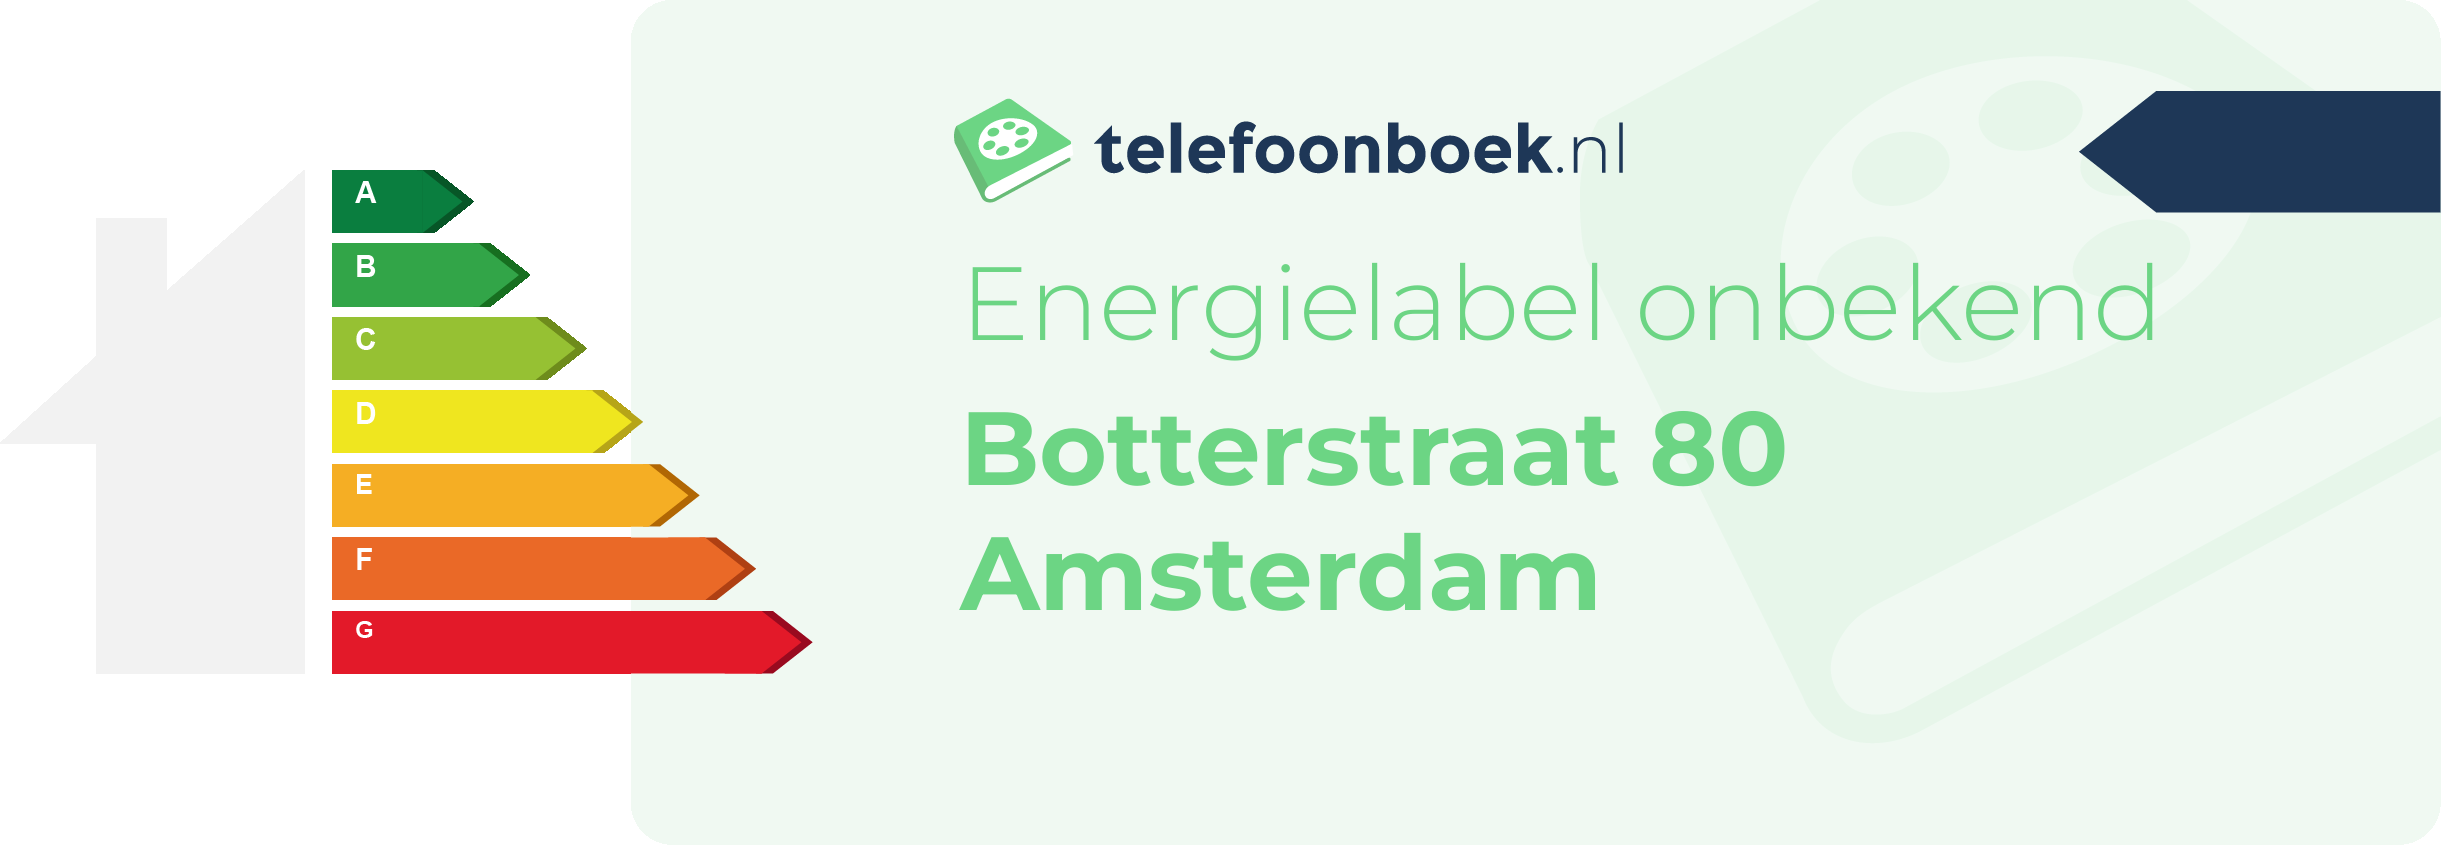 Energielabel Botterstraat 80 Amsterdam